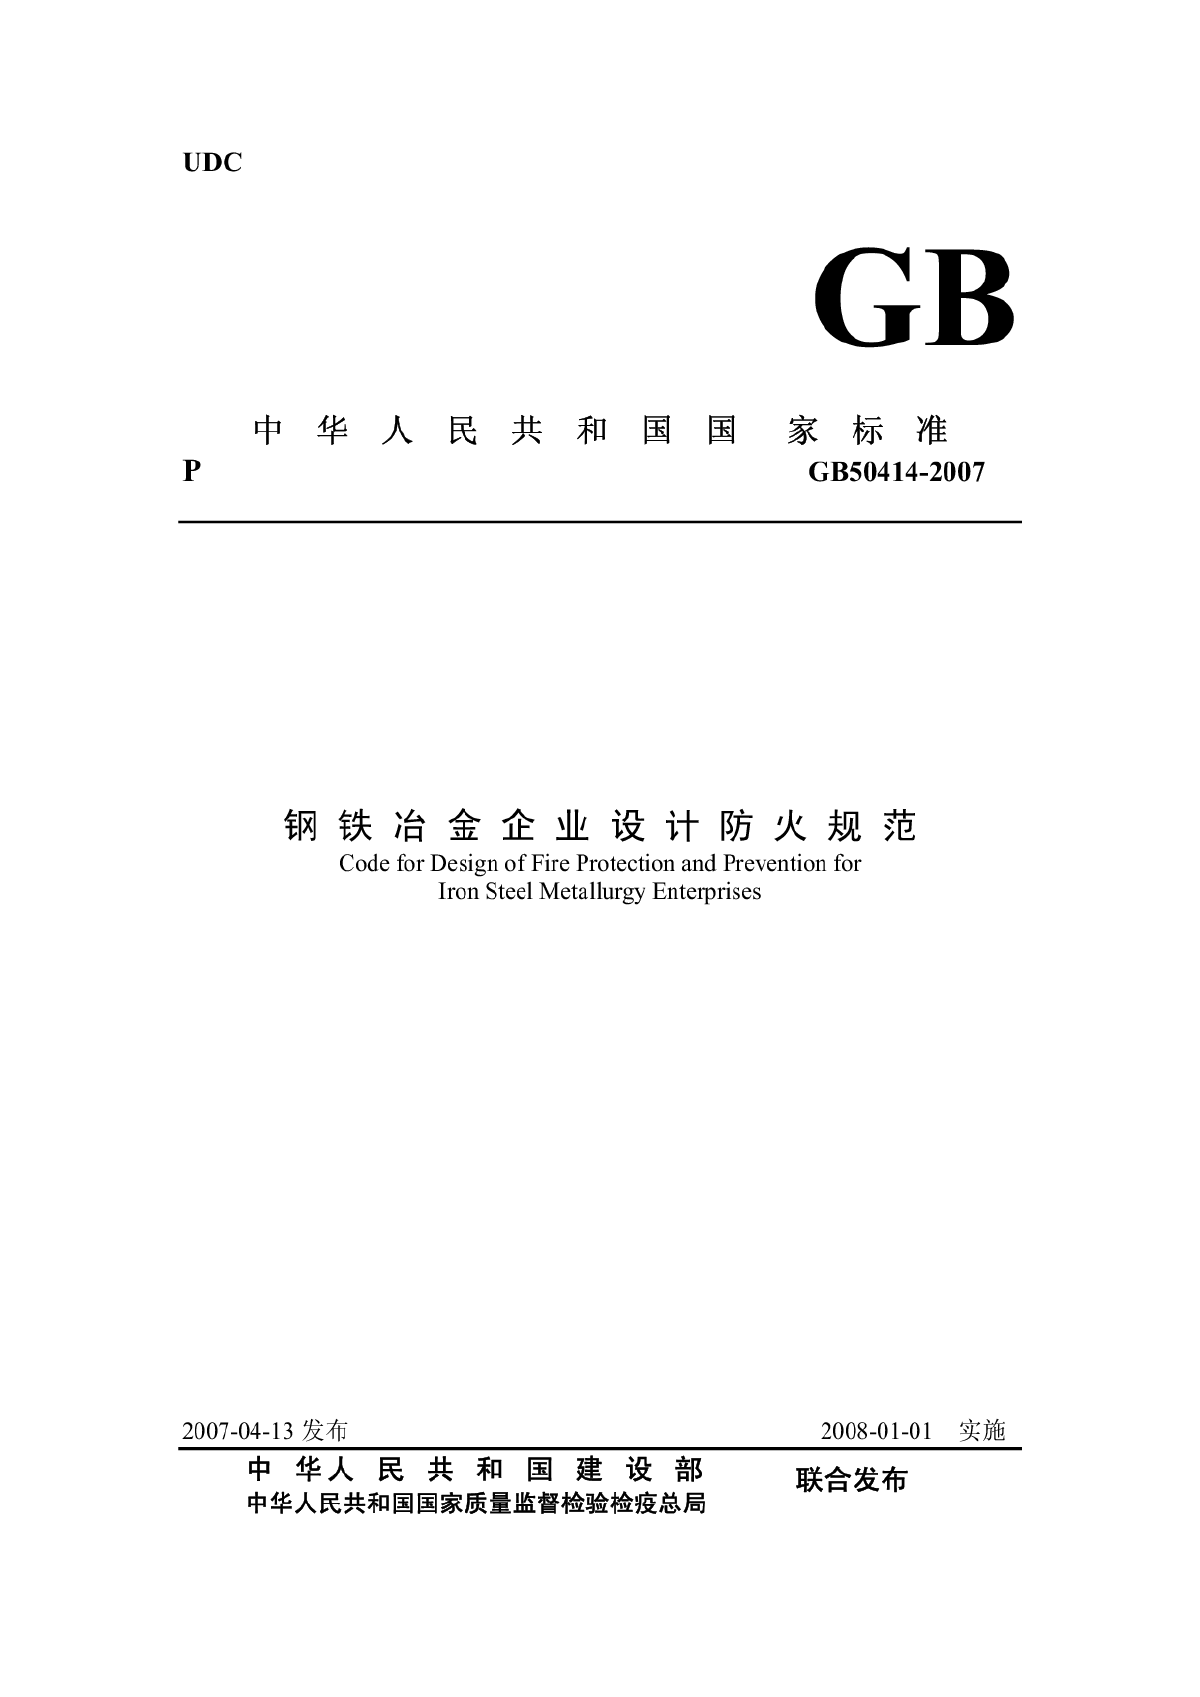 GB50414-2007 钢铁冶金企业设计防火规范.pdf